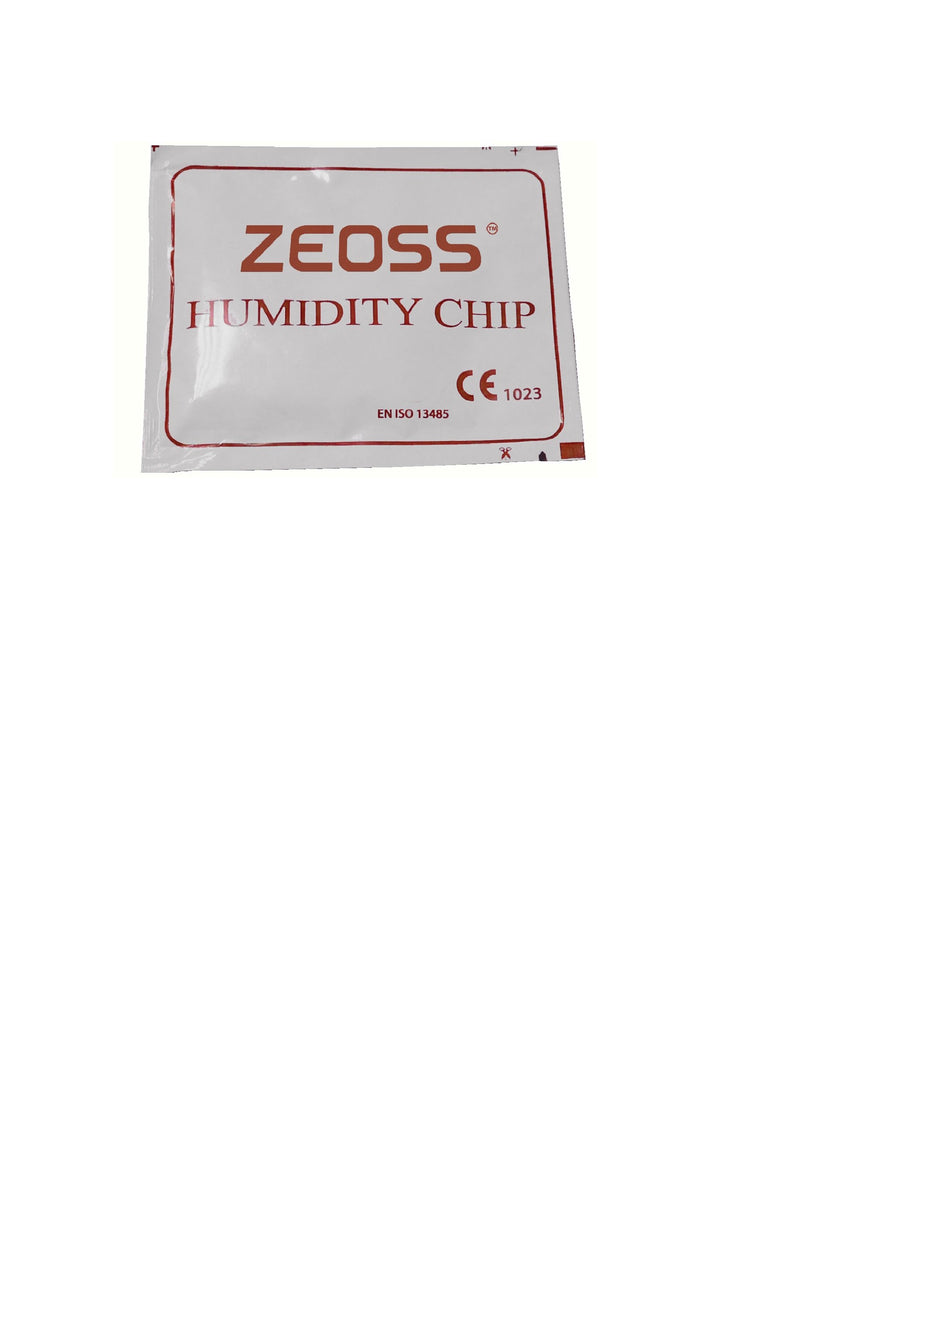 Zeoss Products - The Presence of EtO sterilization - ZD-04